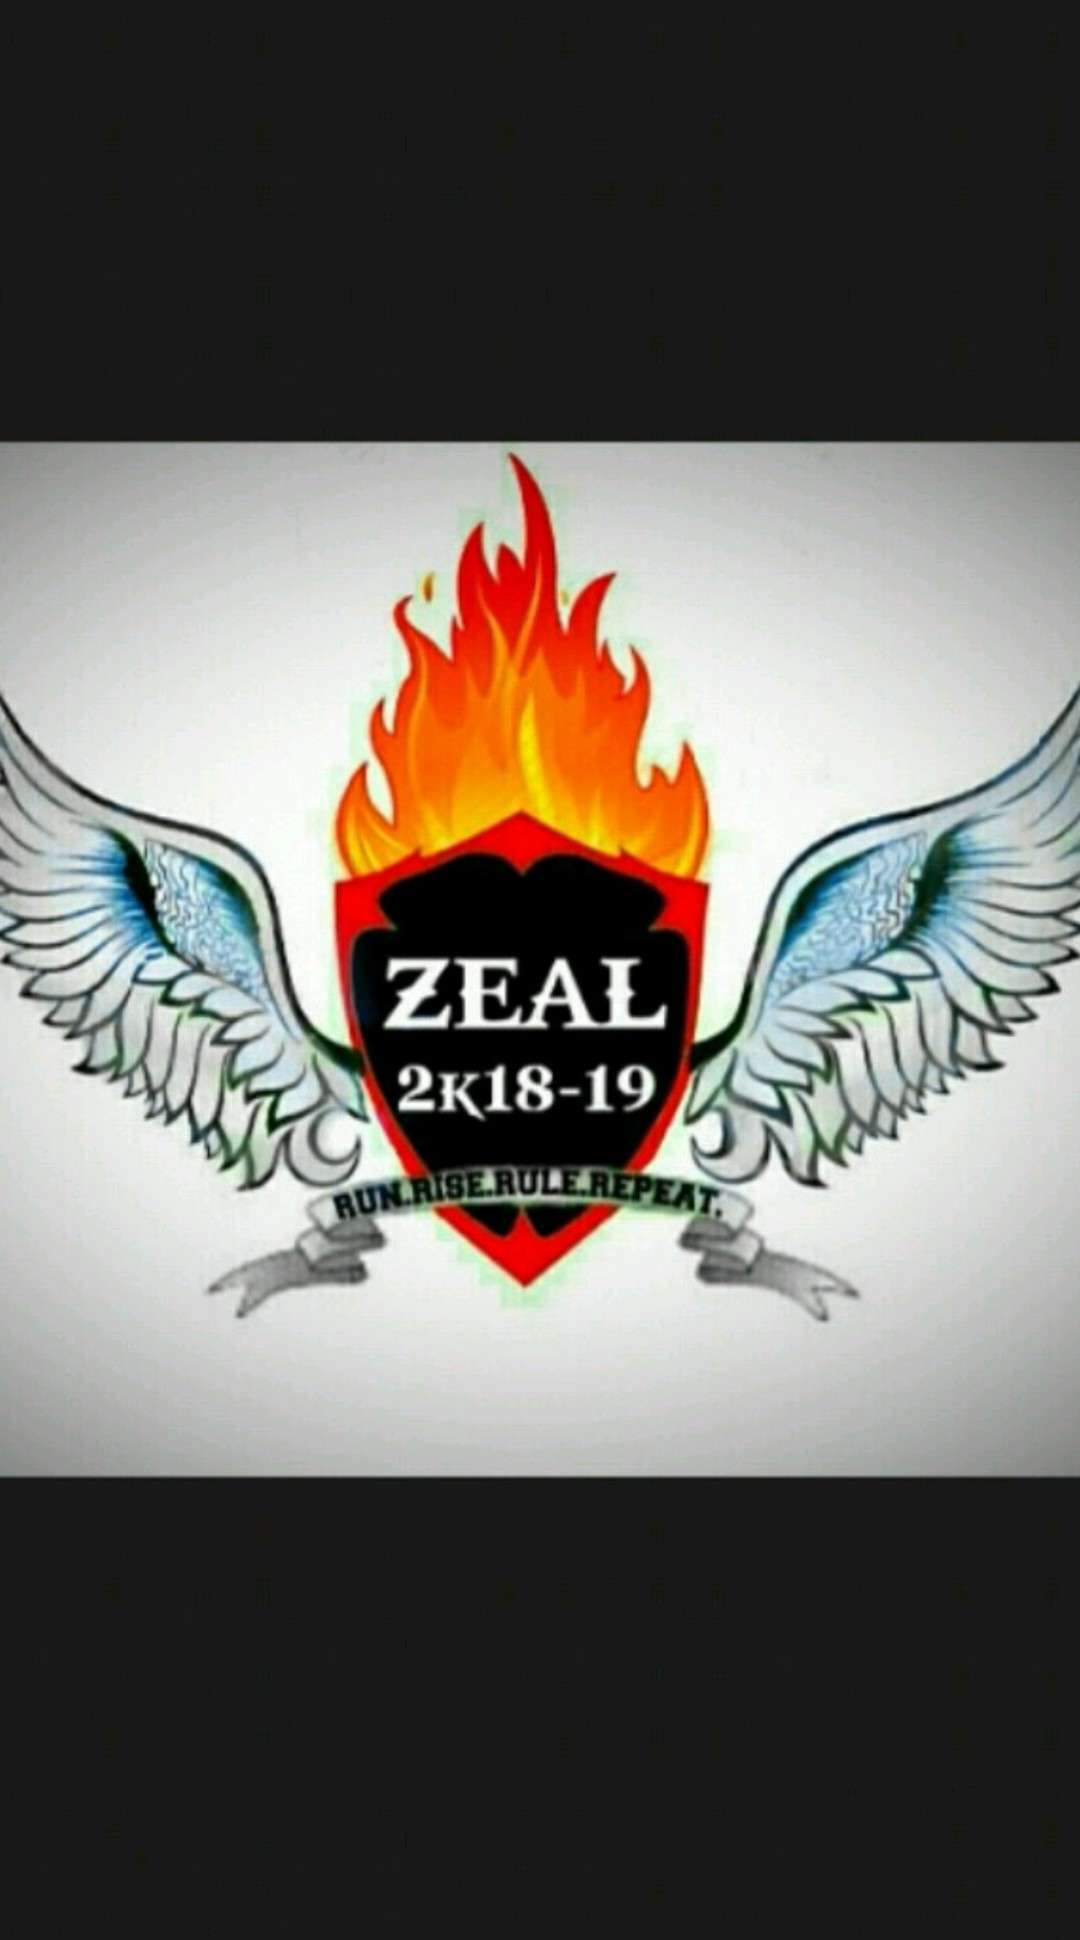 Zeal Sports Festival 2k18-19